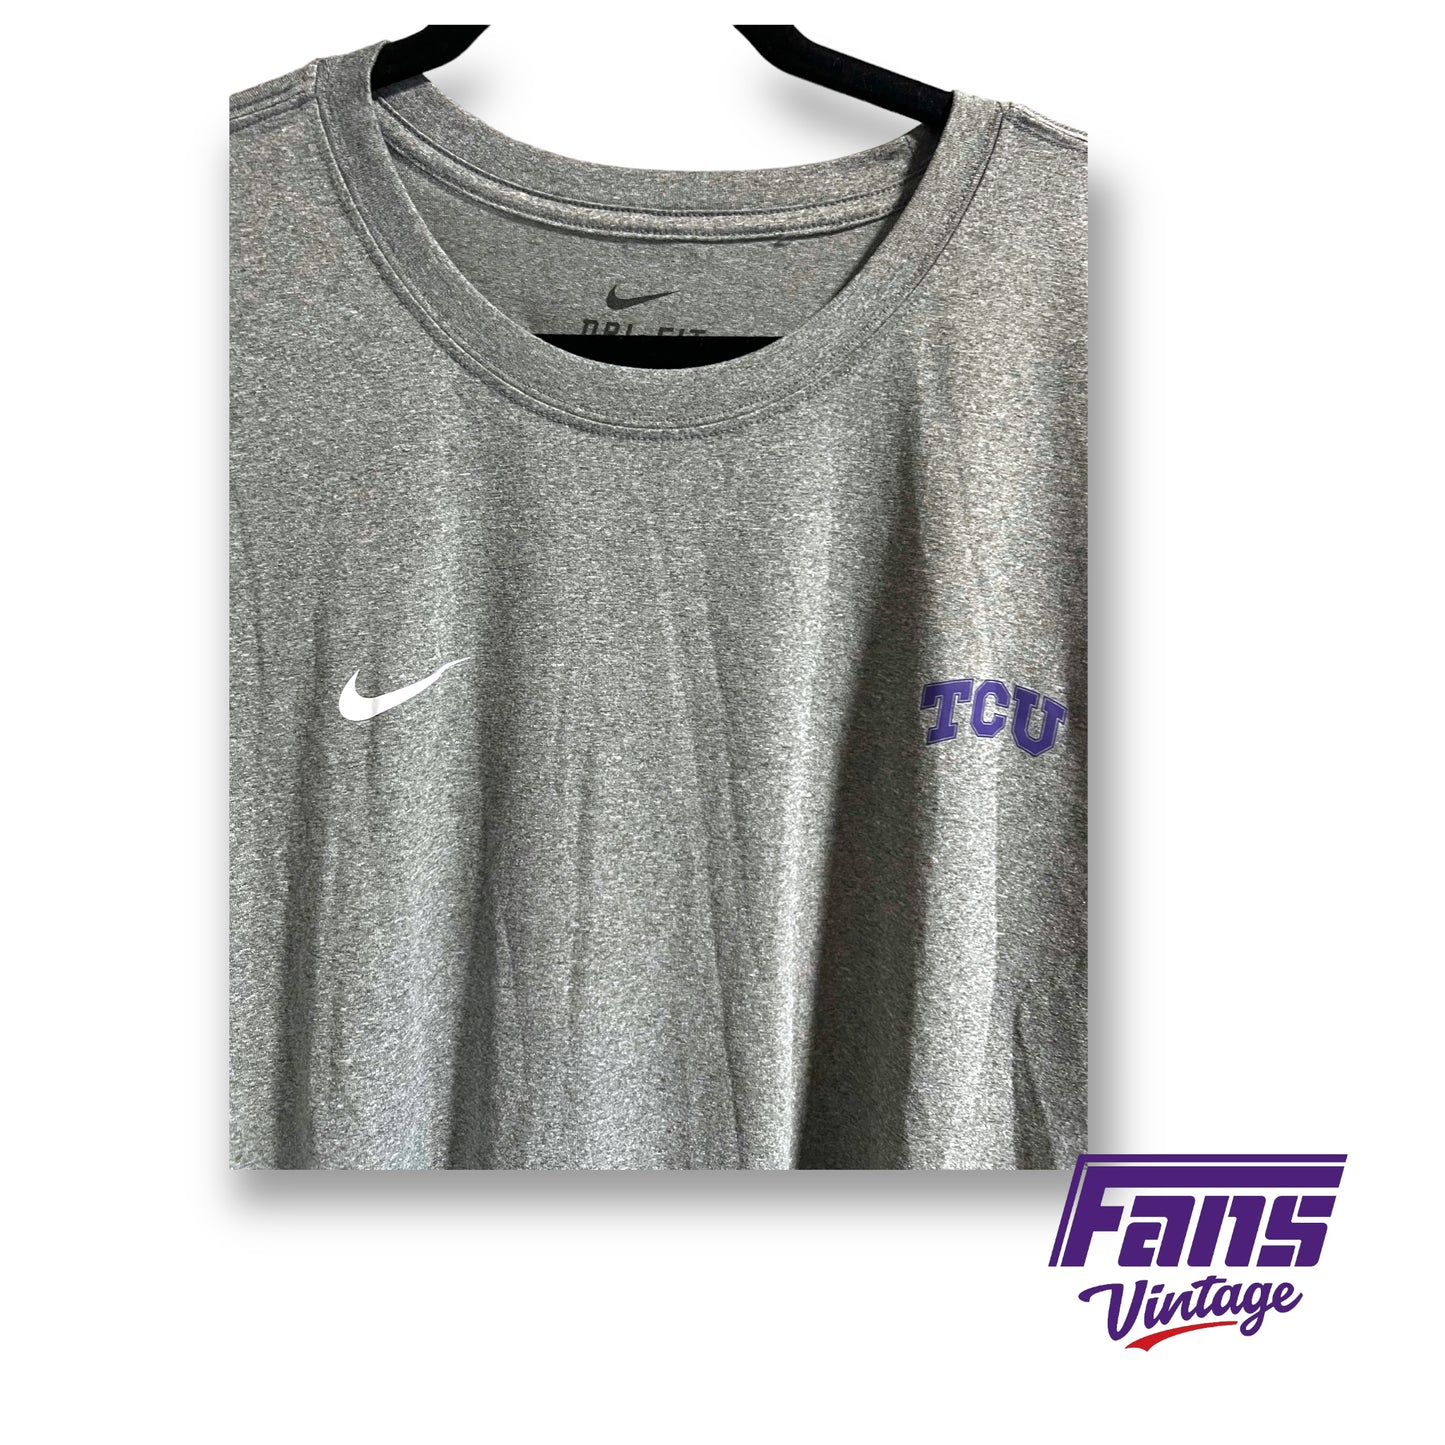 Nike TCU team issued long sleeve workout shirt